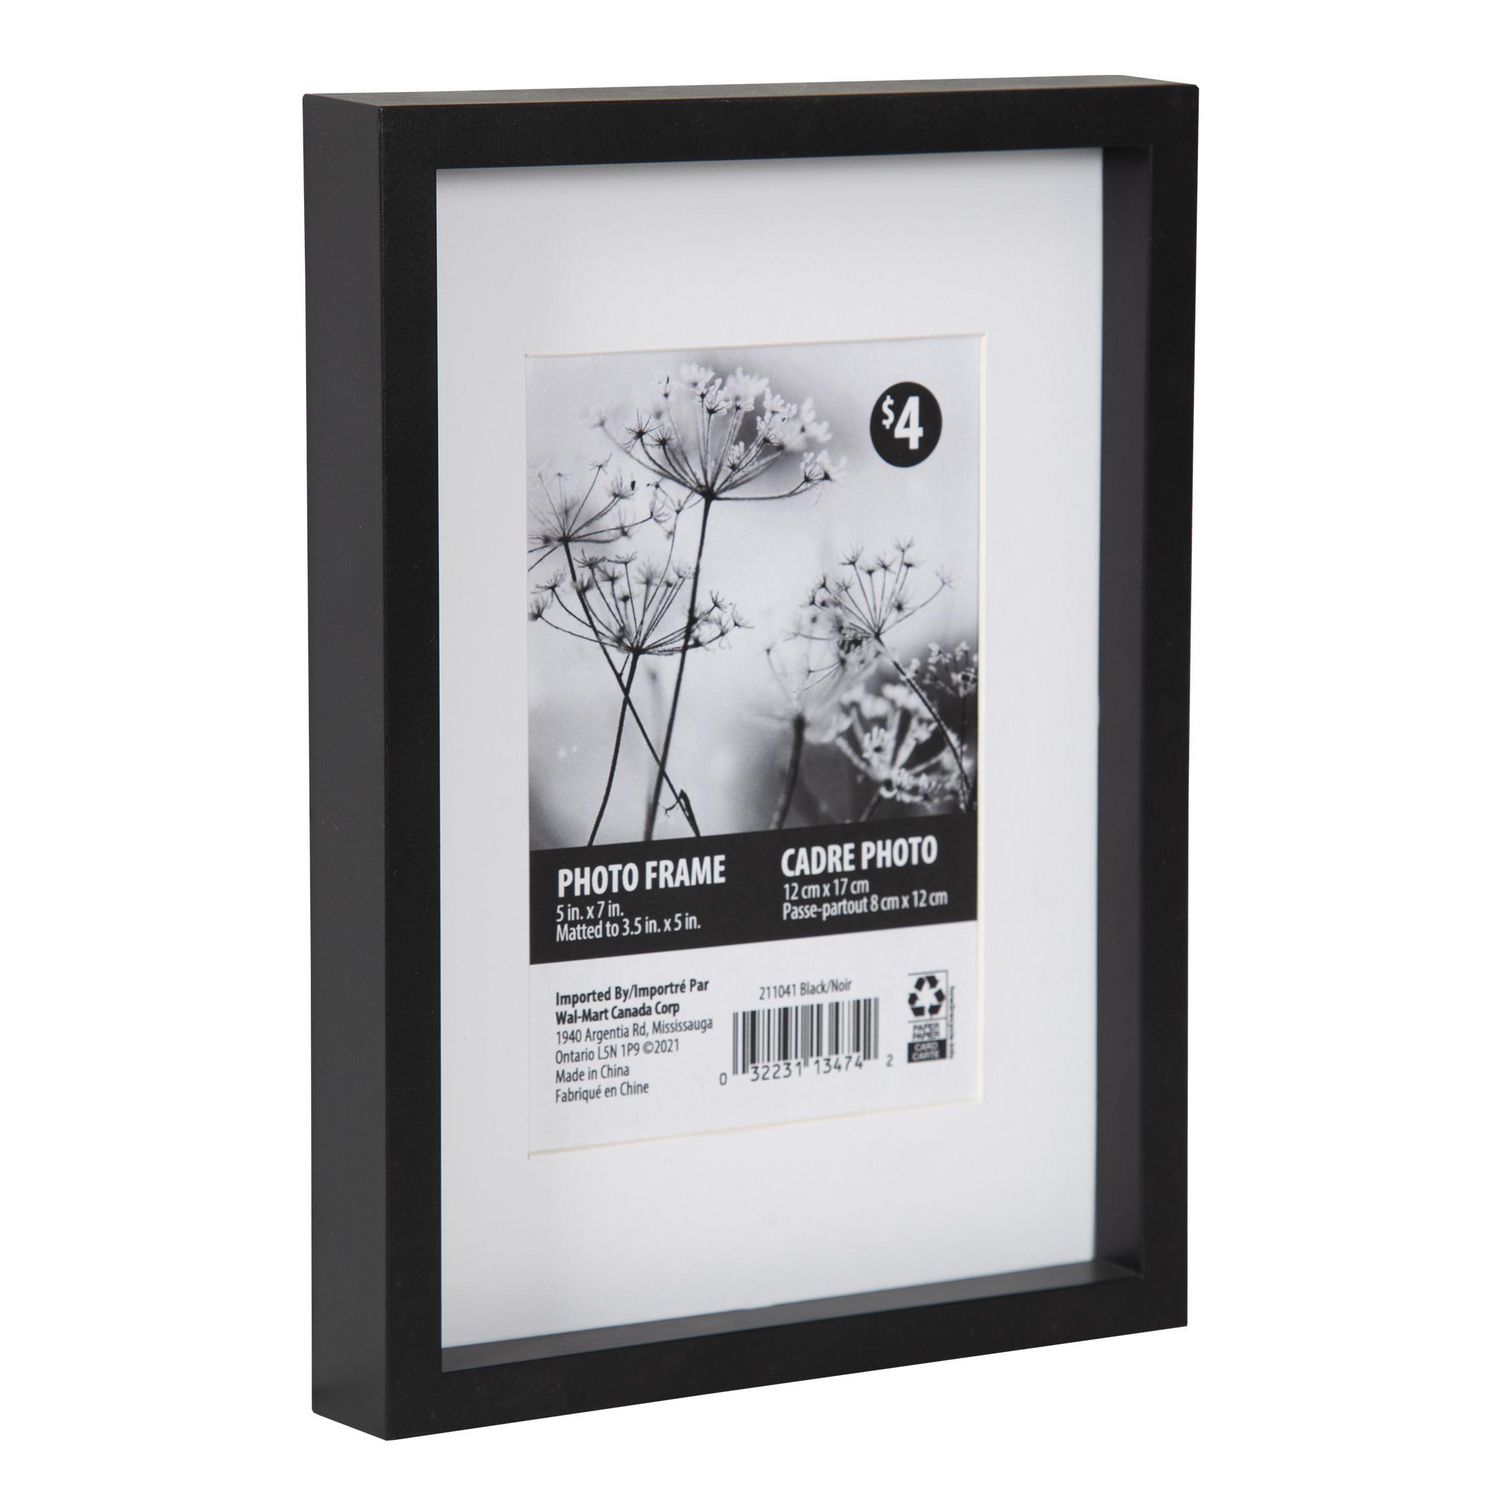 Cadre photo personnalisé en bois 5x7 - Annonce de bébé( Choix de cadre  Blanc,Noir ou Naturel)